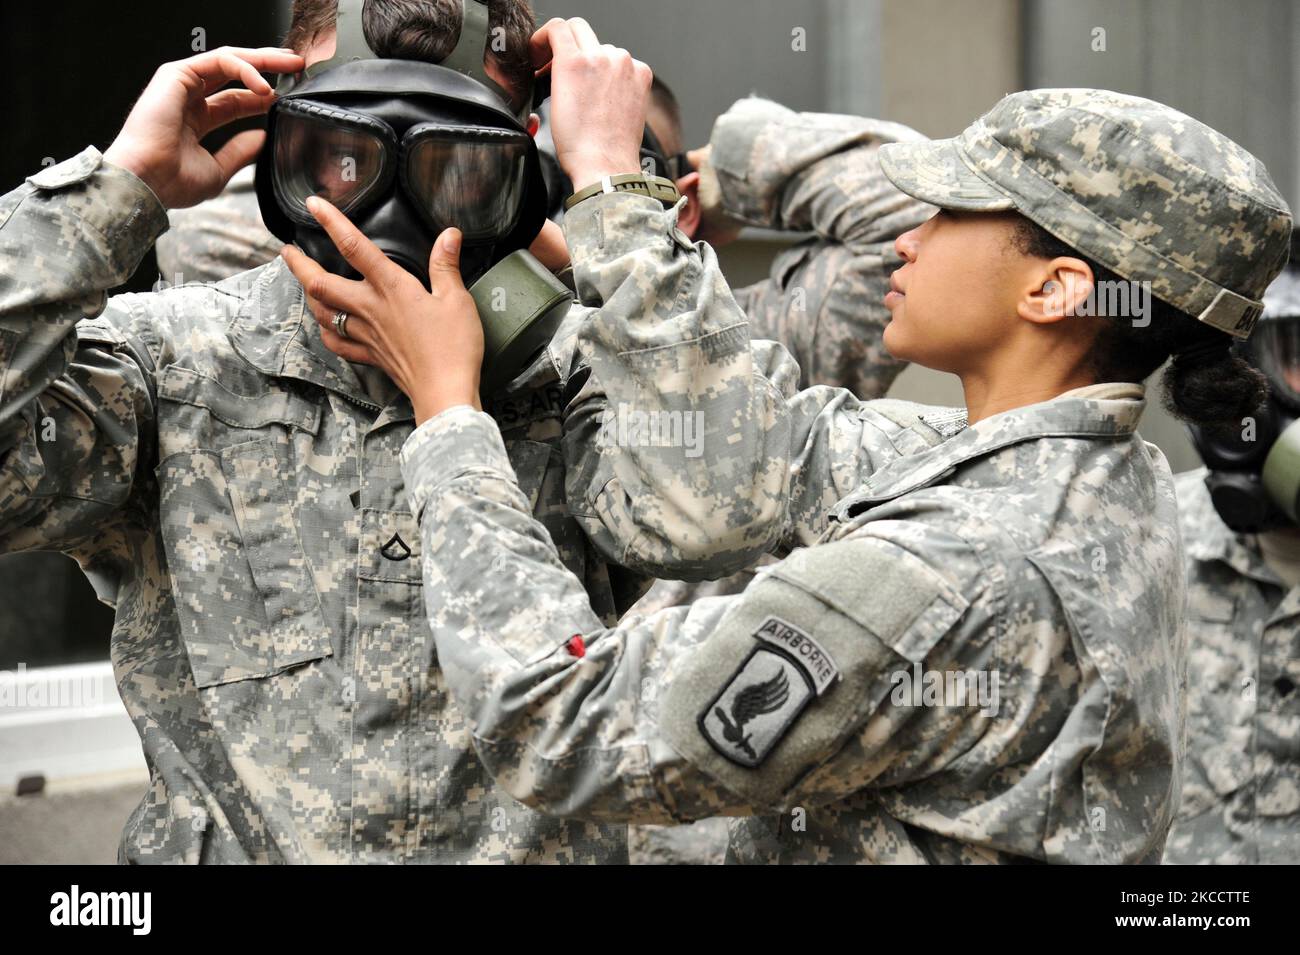 Le soldat de l'armée américaine vérifie le masque de protection d'un soldat. Banque D'Images